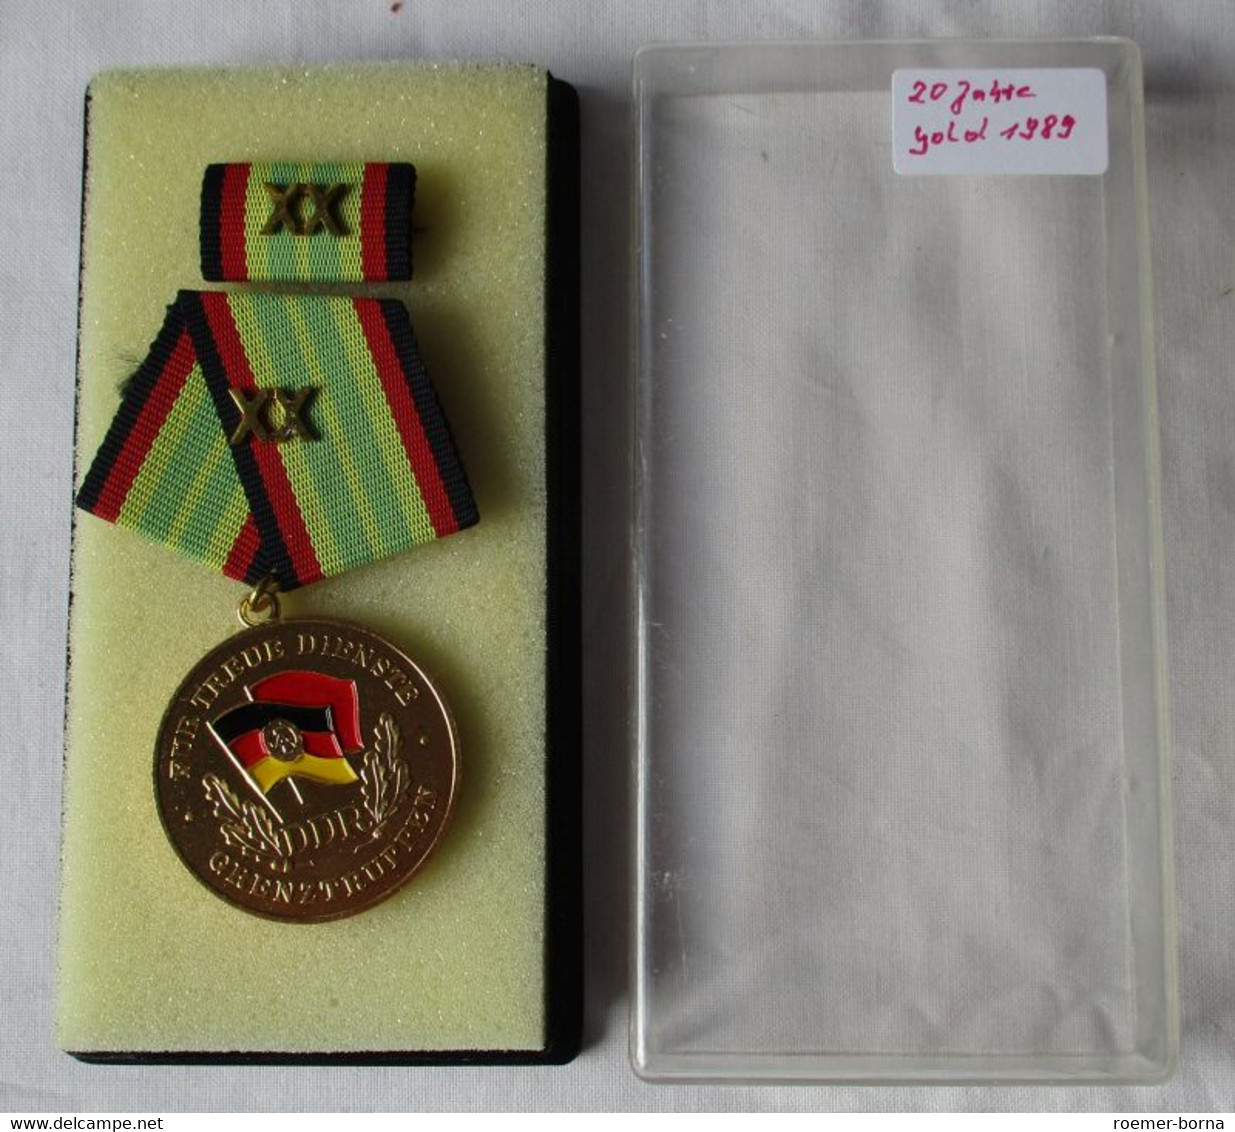 Medaille Für Treue Dienste In Den Grenztruppen Der DDR Gold F. 20 Jahre (153910) - Duitse Democratische Republiek